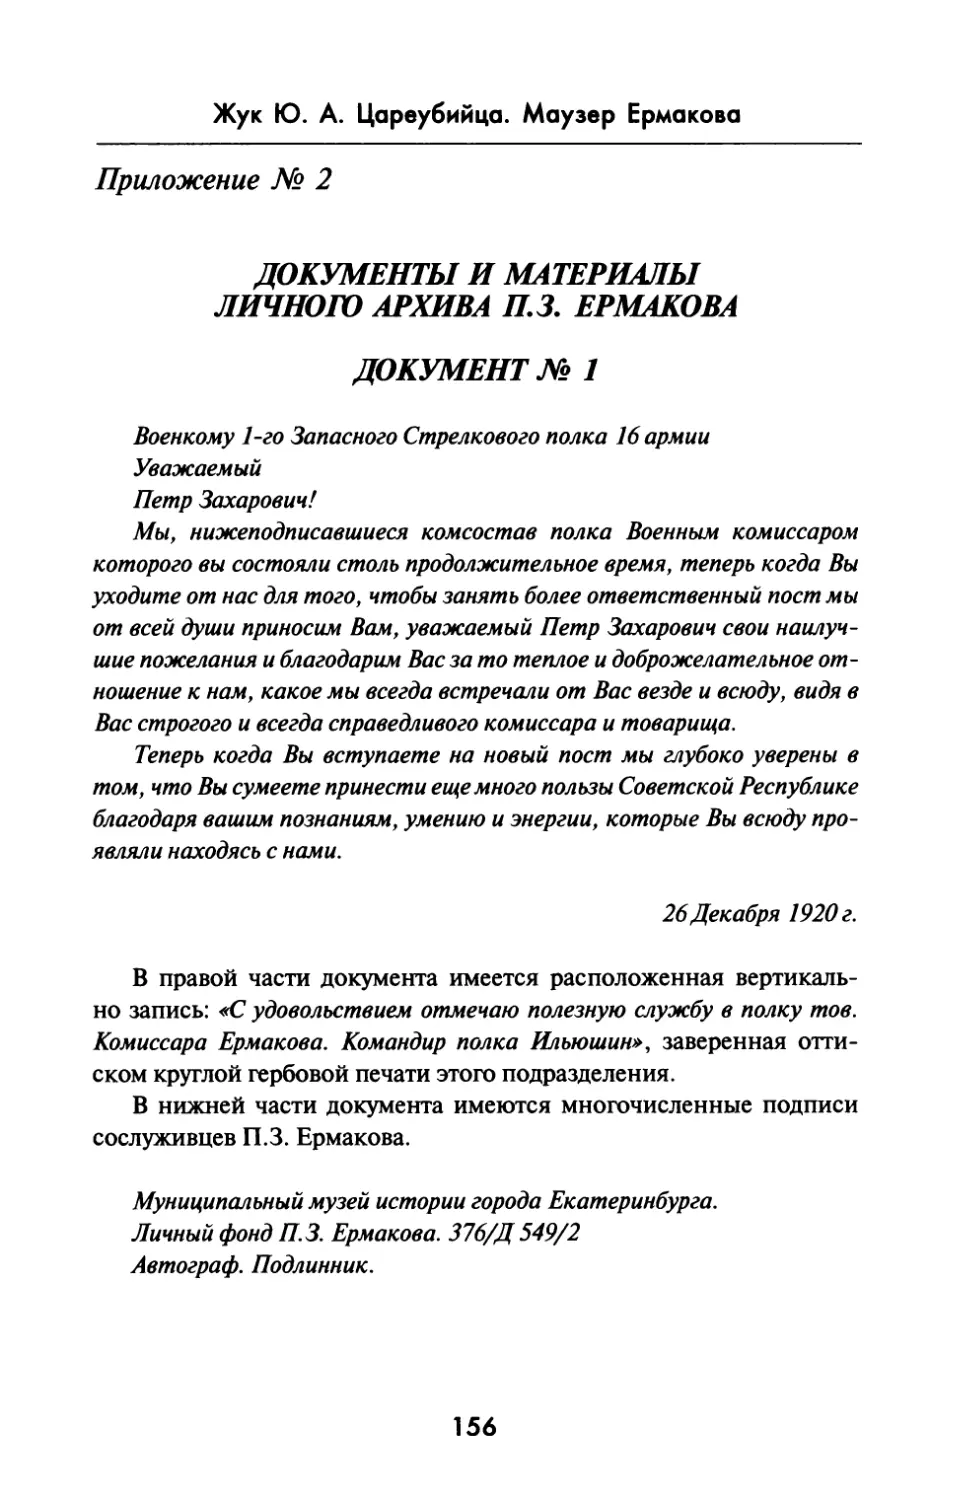 Приложение  № 2.  Документы  и  материалы личного  архива  П.З.  Ермакова